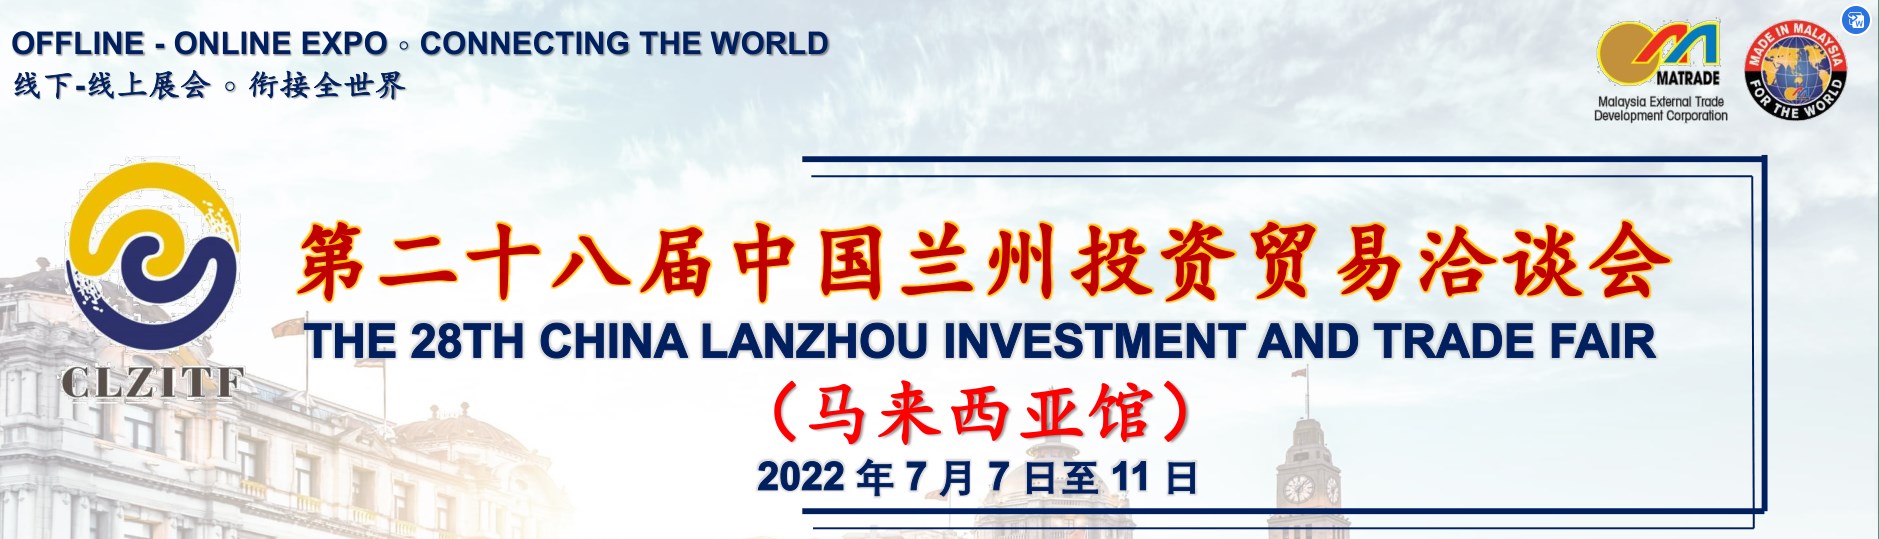 Chiwonetsero cha 28 cha China Lanzhou Investment and Trade Fair